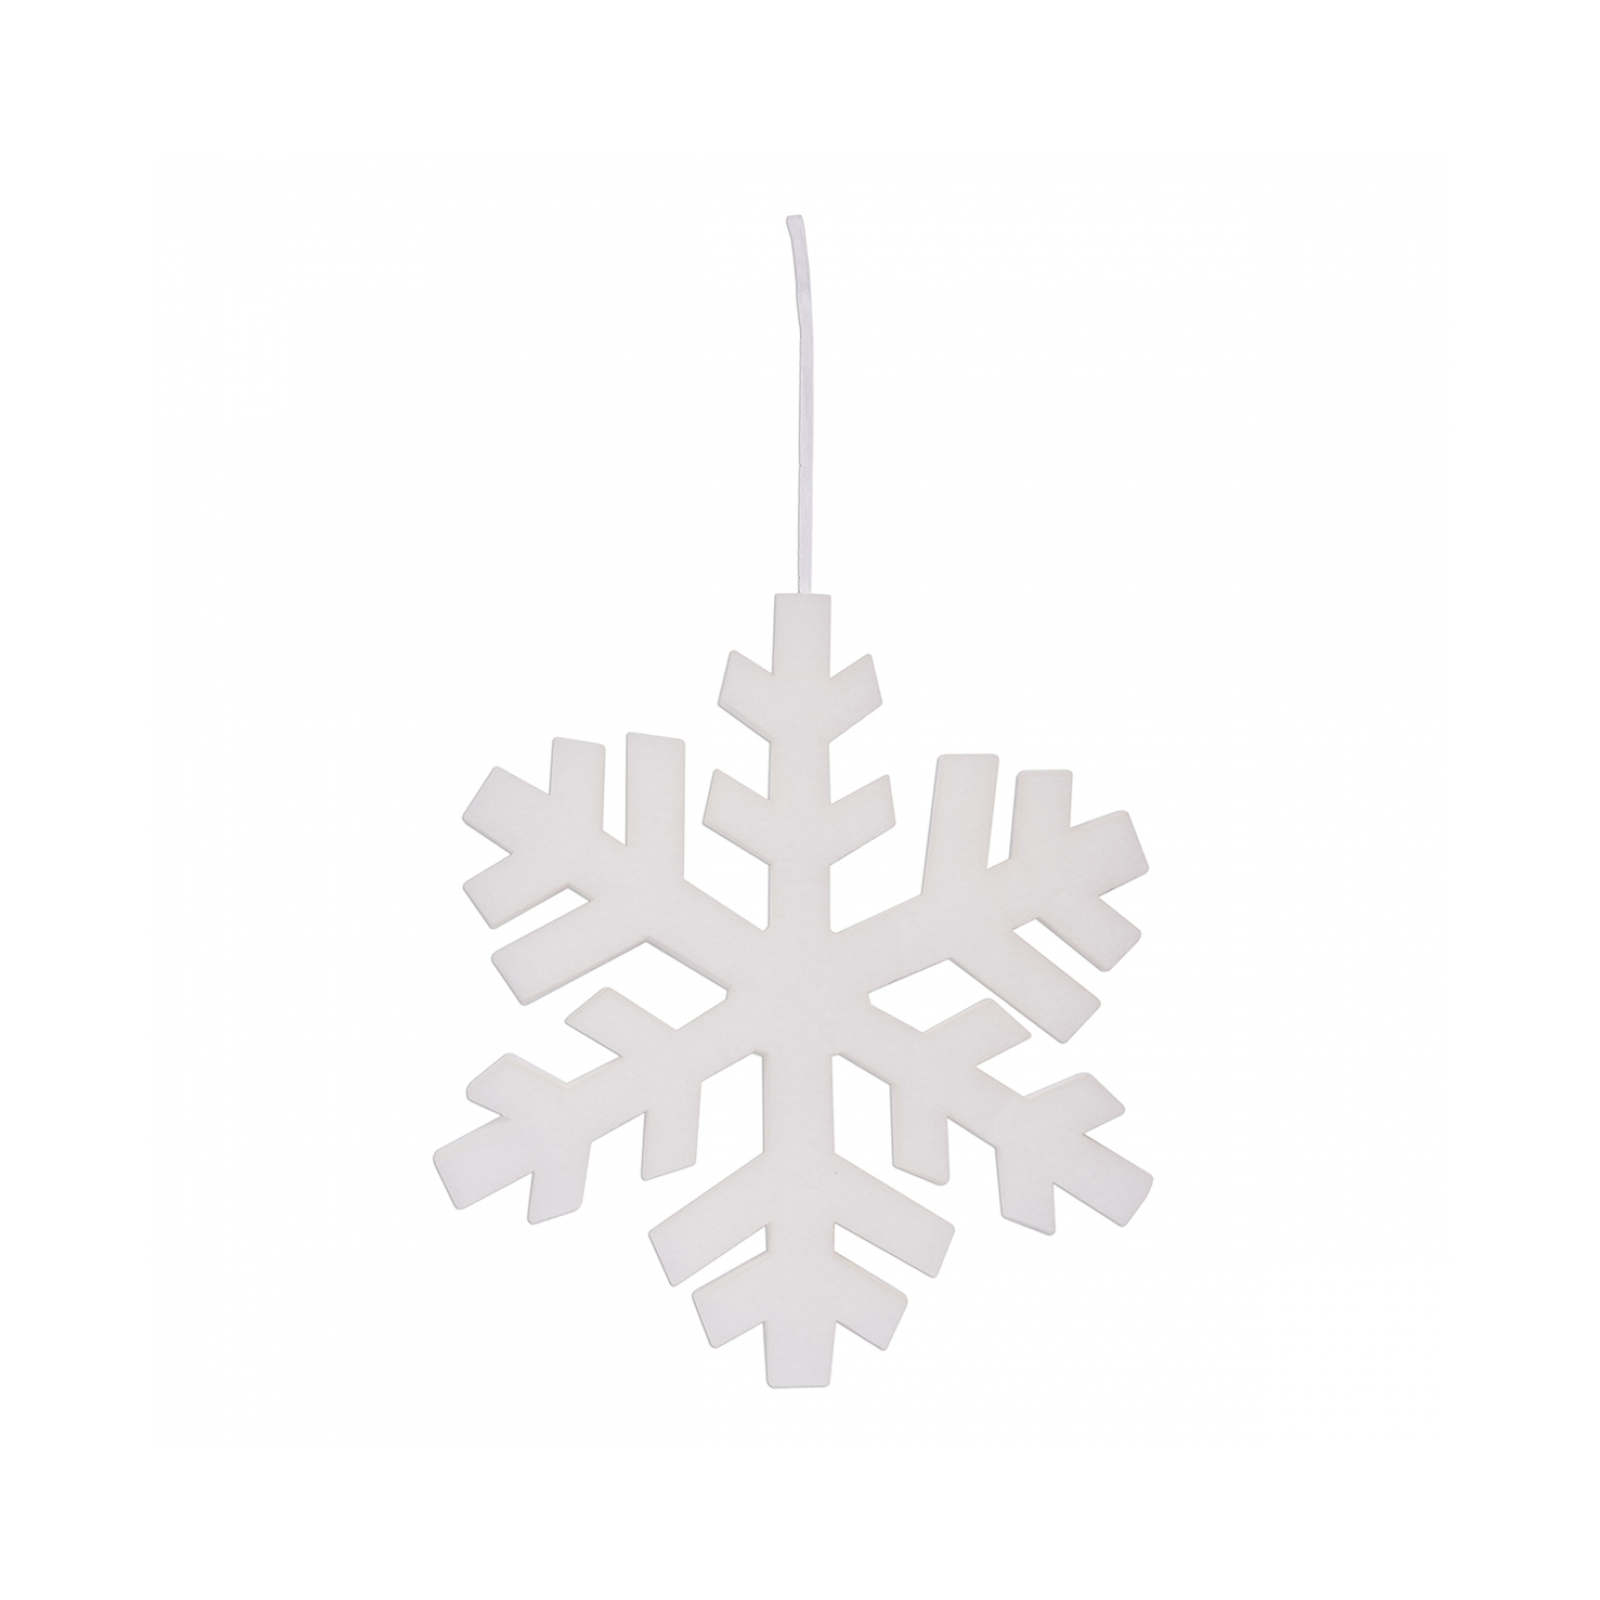 Прикраса декоративна Novogod`ko сніжинка біла, поліестер, 40 cм (974202)